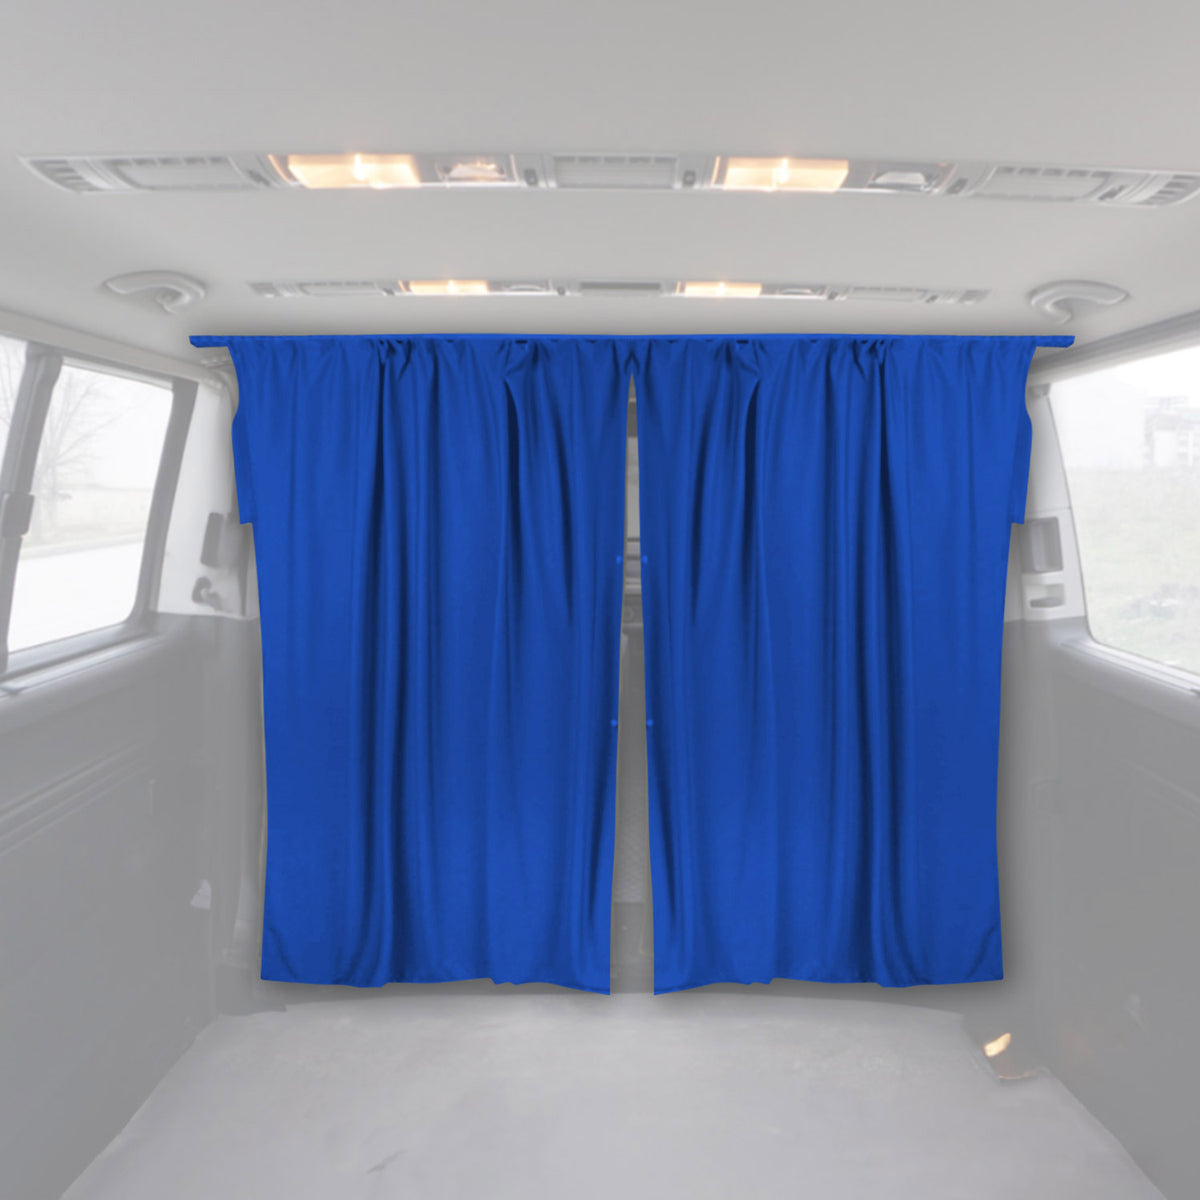 Fahrerhaus Führerhaus Gardinen Sonnenschutz für Fiat Talento Blau 2tlg